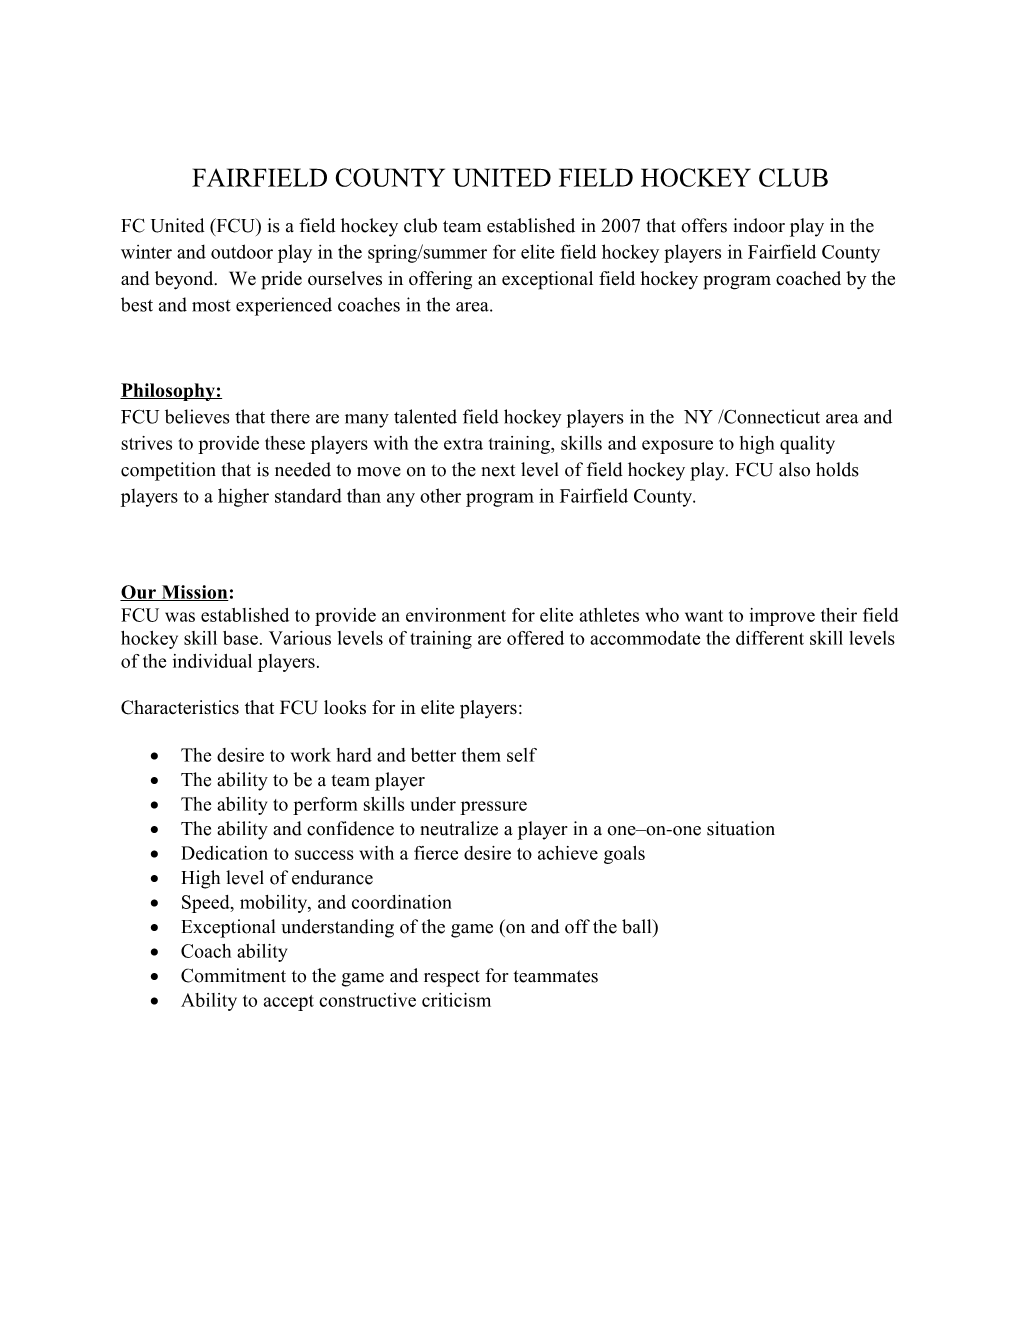 Fairfield County United Field Hockey Club